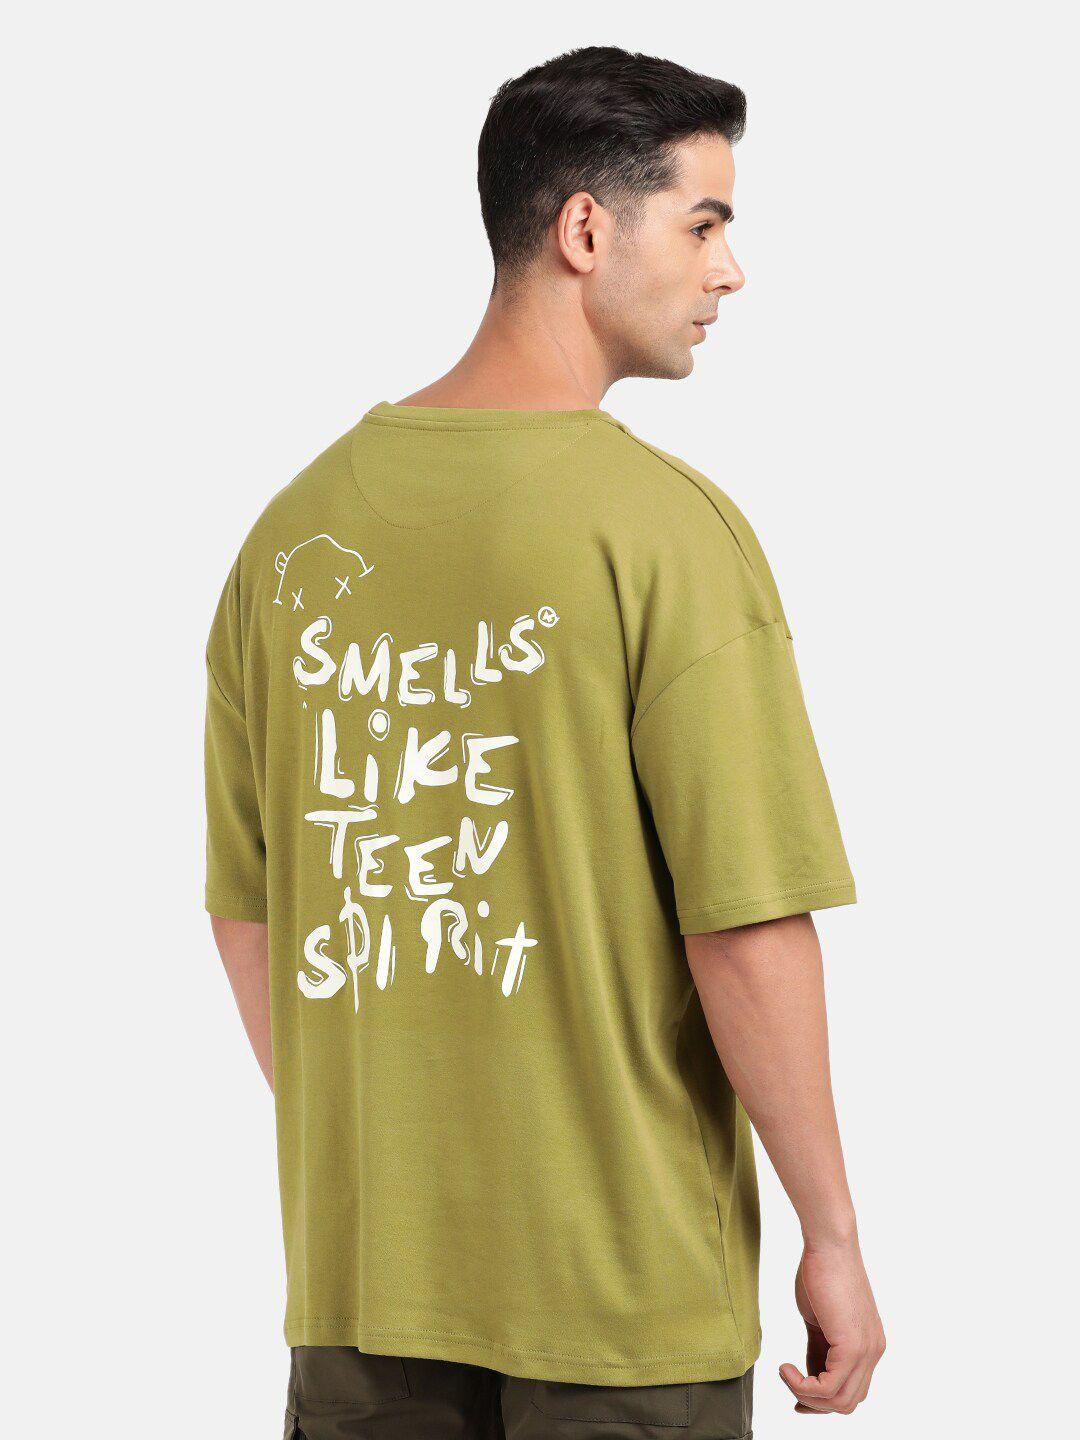 bene kleed men green typography applique t-shirt